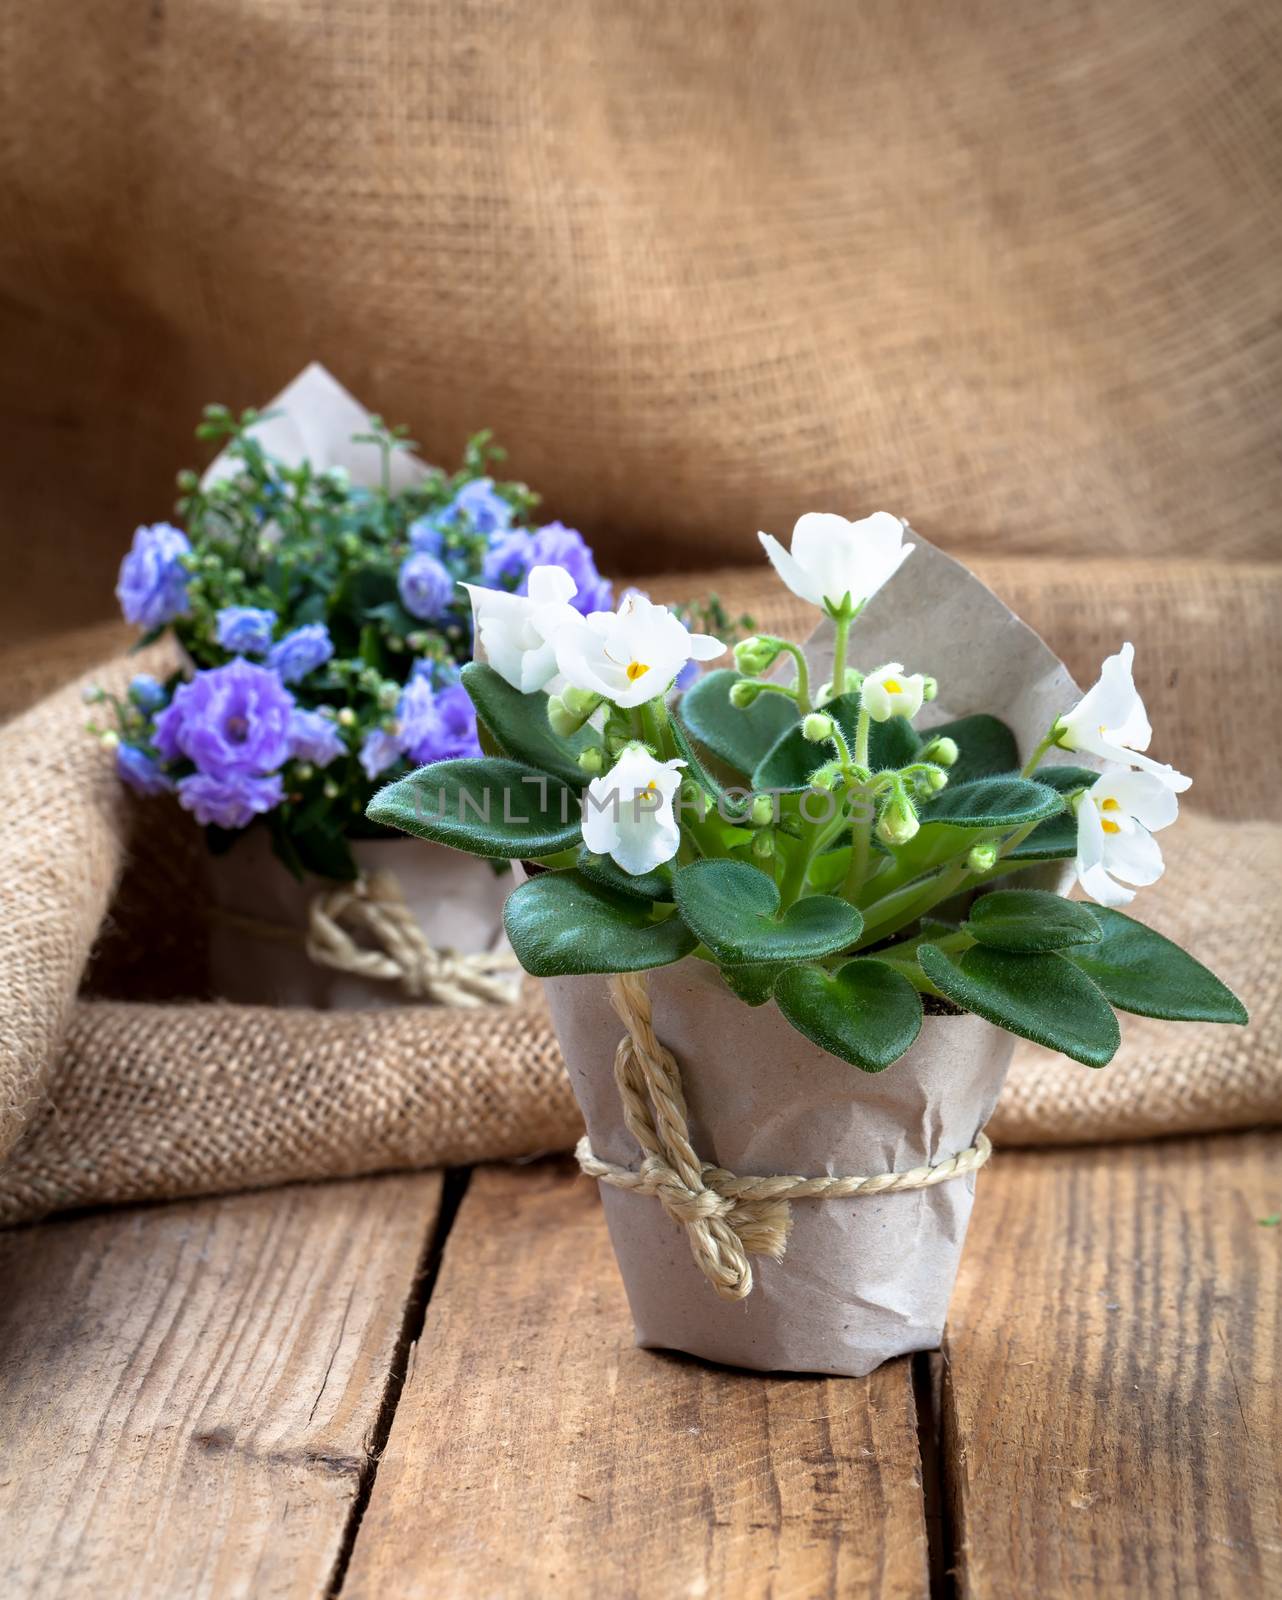 Saintpaulias flowers in paper packaging, on sackcloth, wooden ba by motorolka